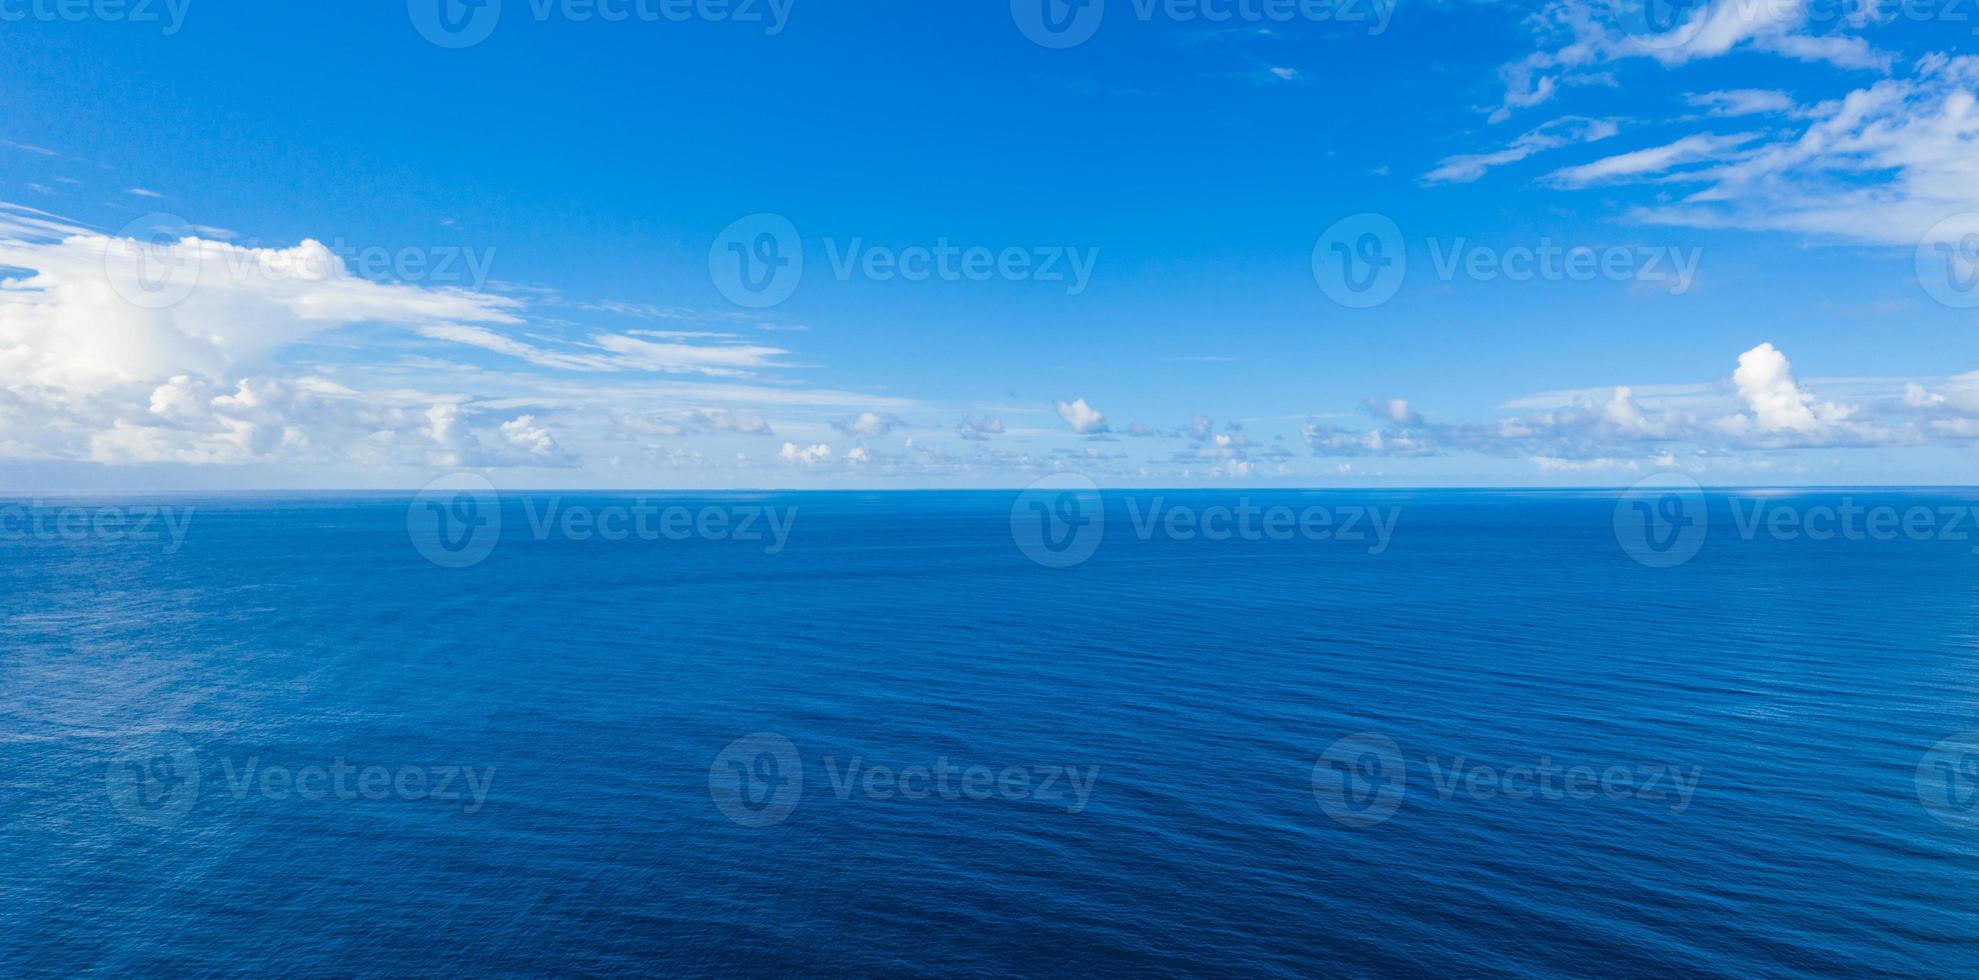 blaues meer blauer himmel horizont. perfektes natur- und ökologiekonzept. Tag des Ozeans, Tag des Meeres und der Erde. meeresumgebung, perfekter naturhintergrund foto